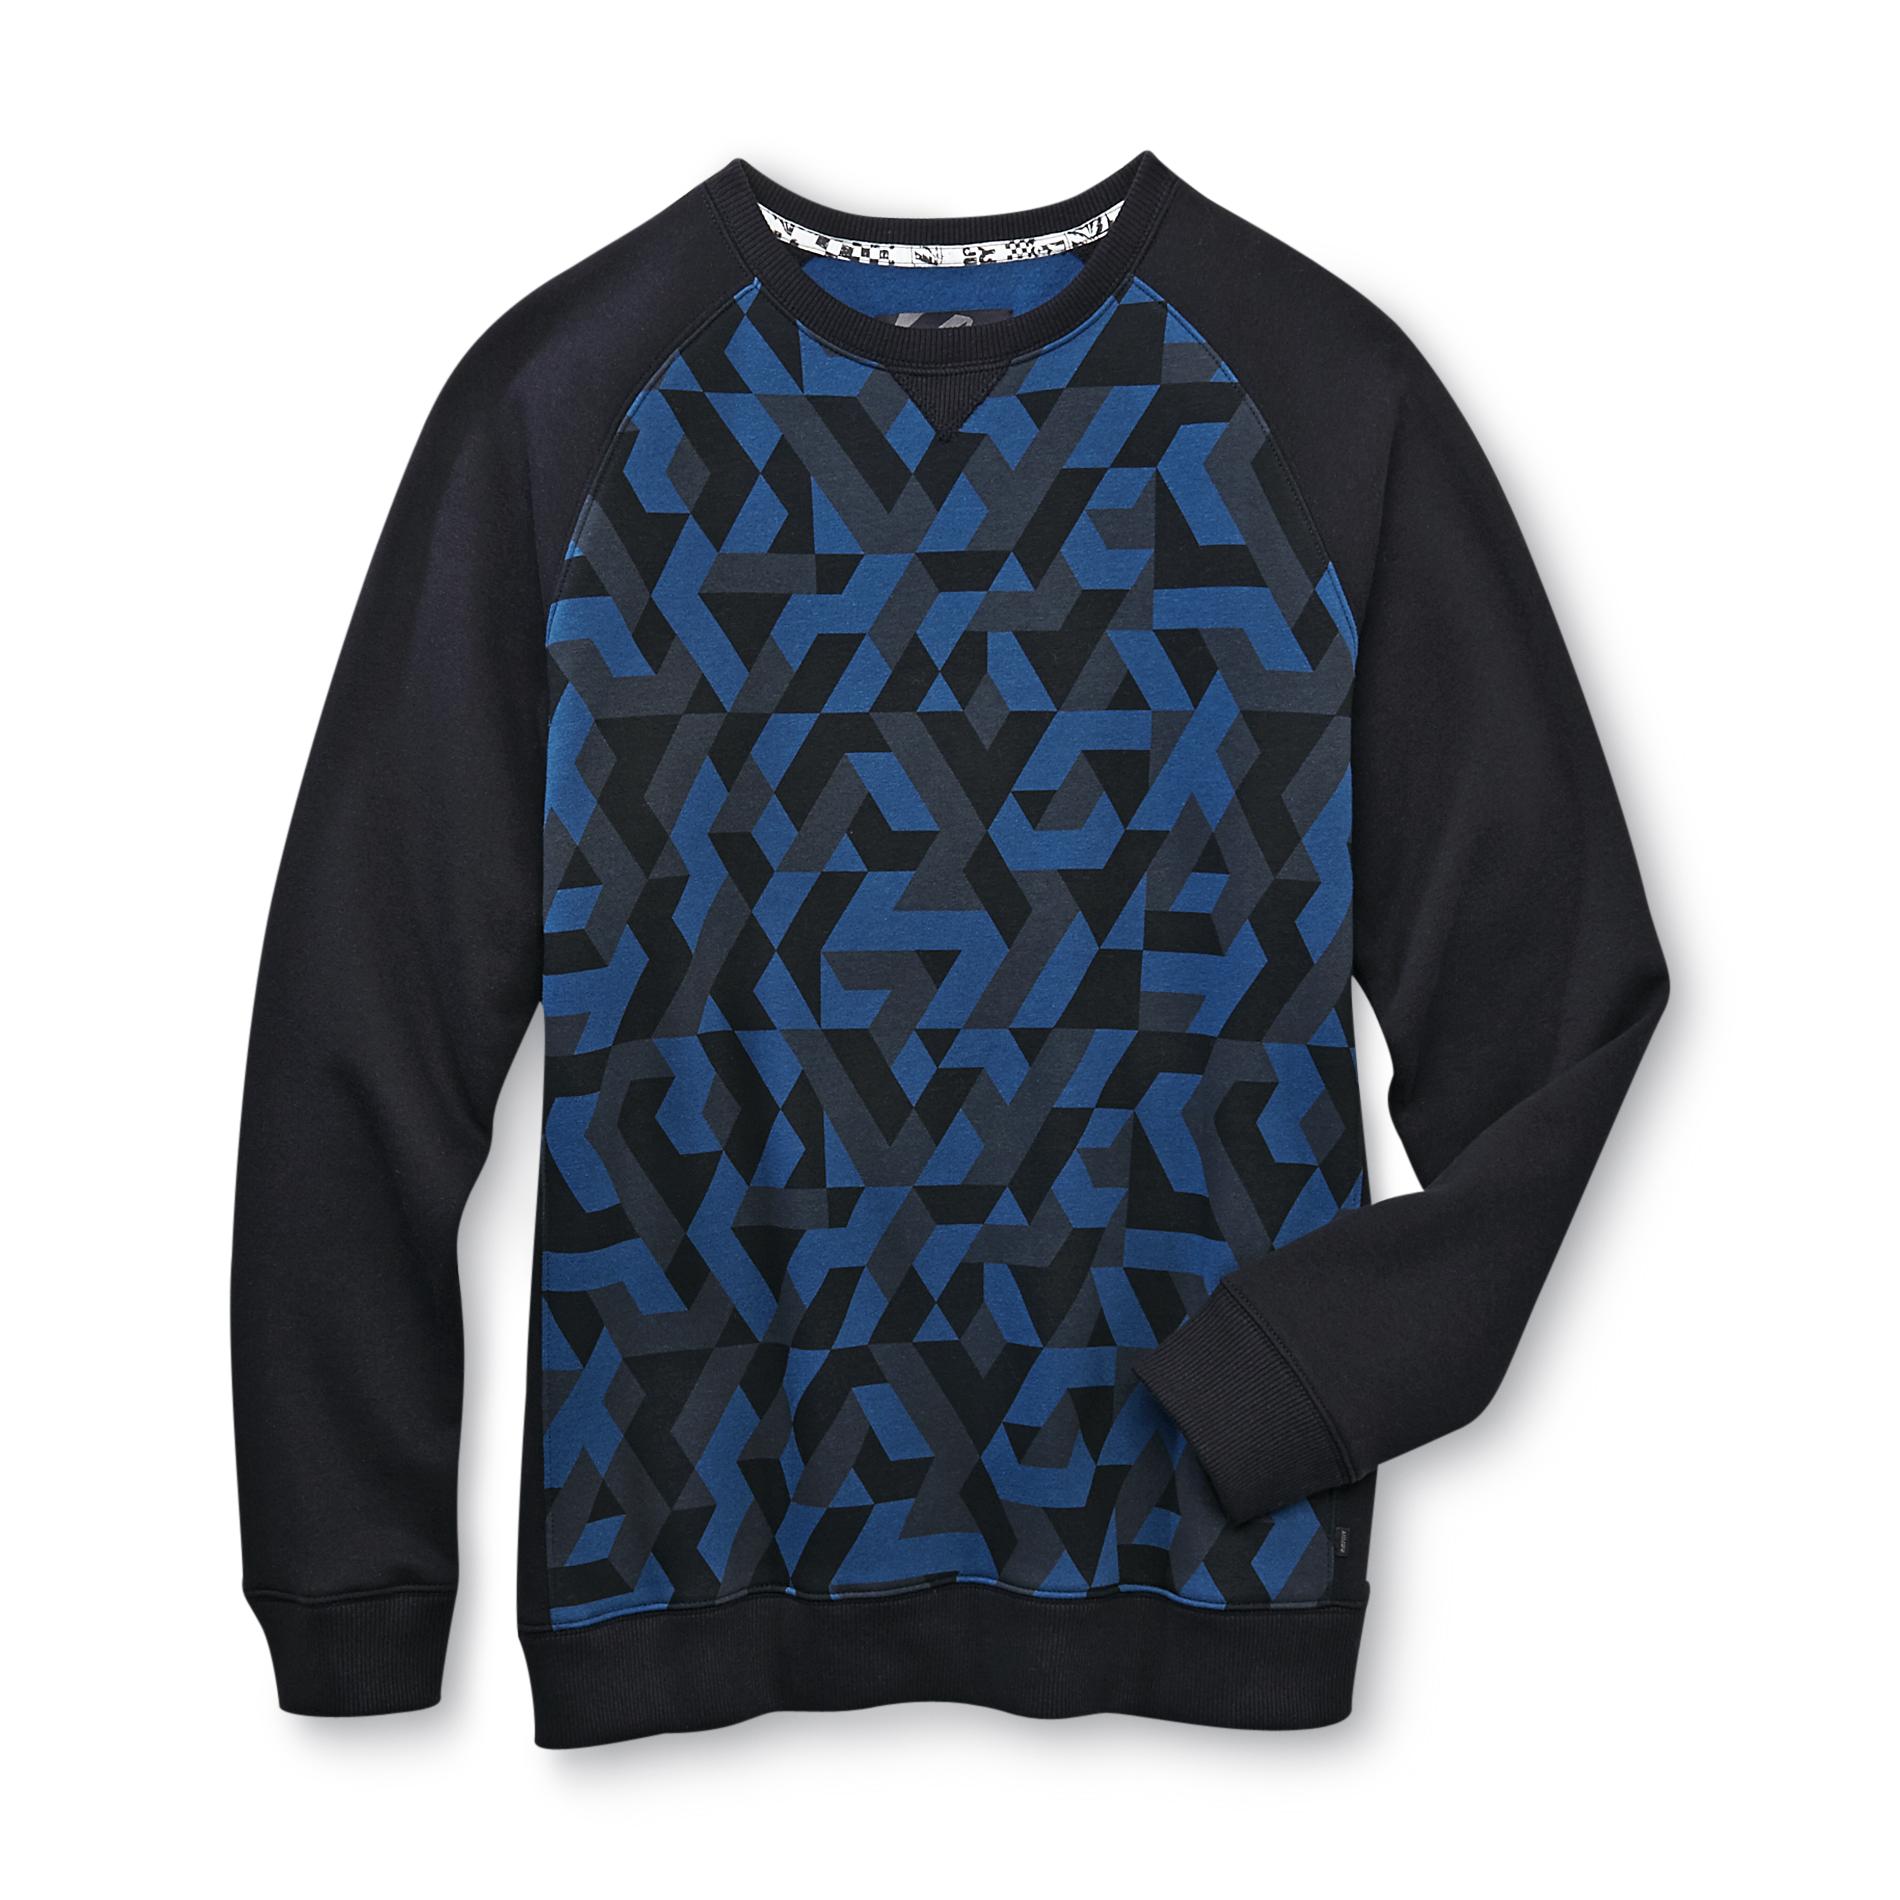 Amplify Young Men's Fleece Lined Sweatshirt - Aztec